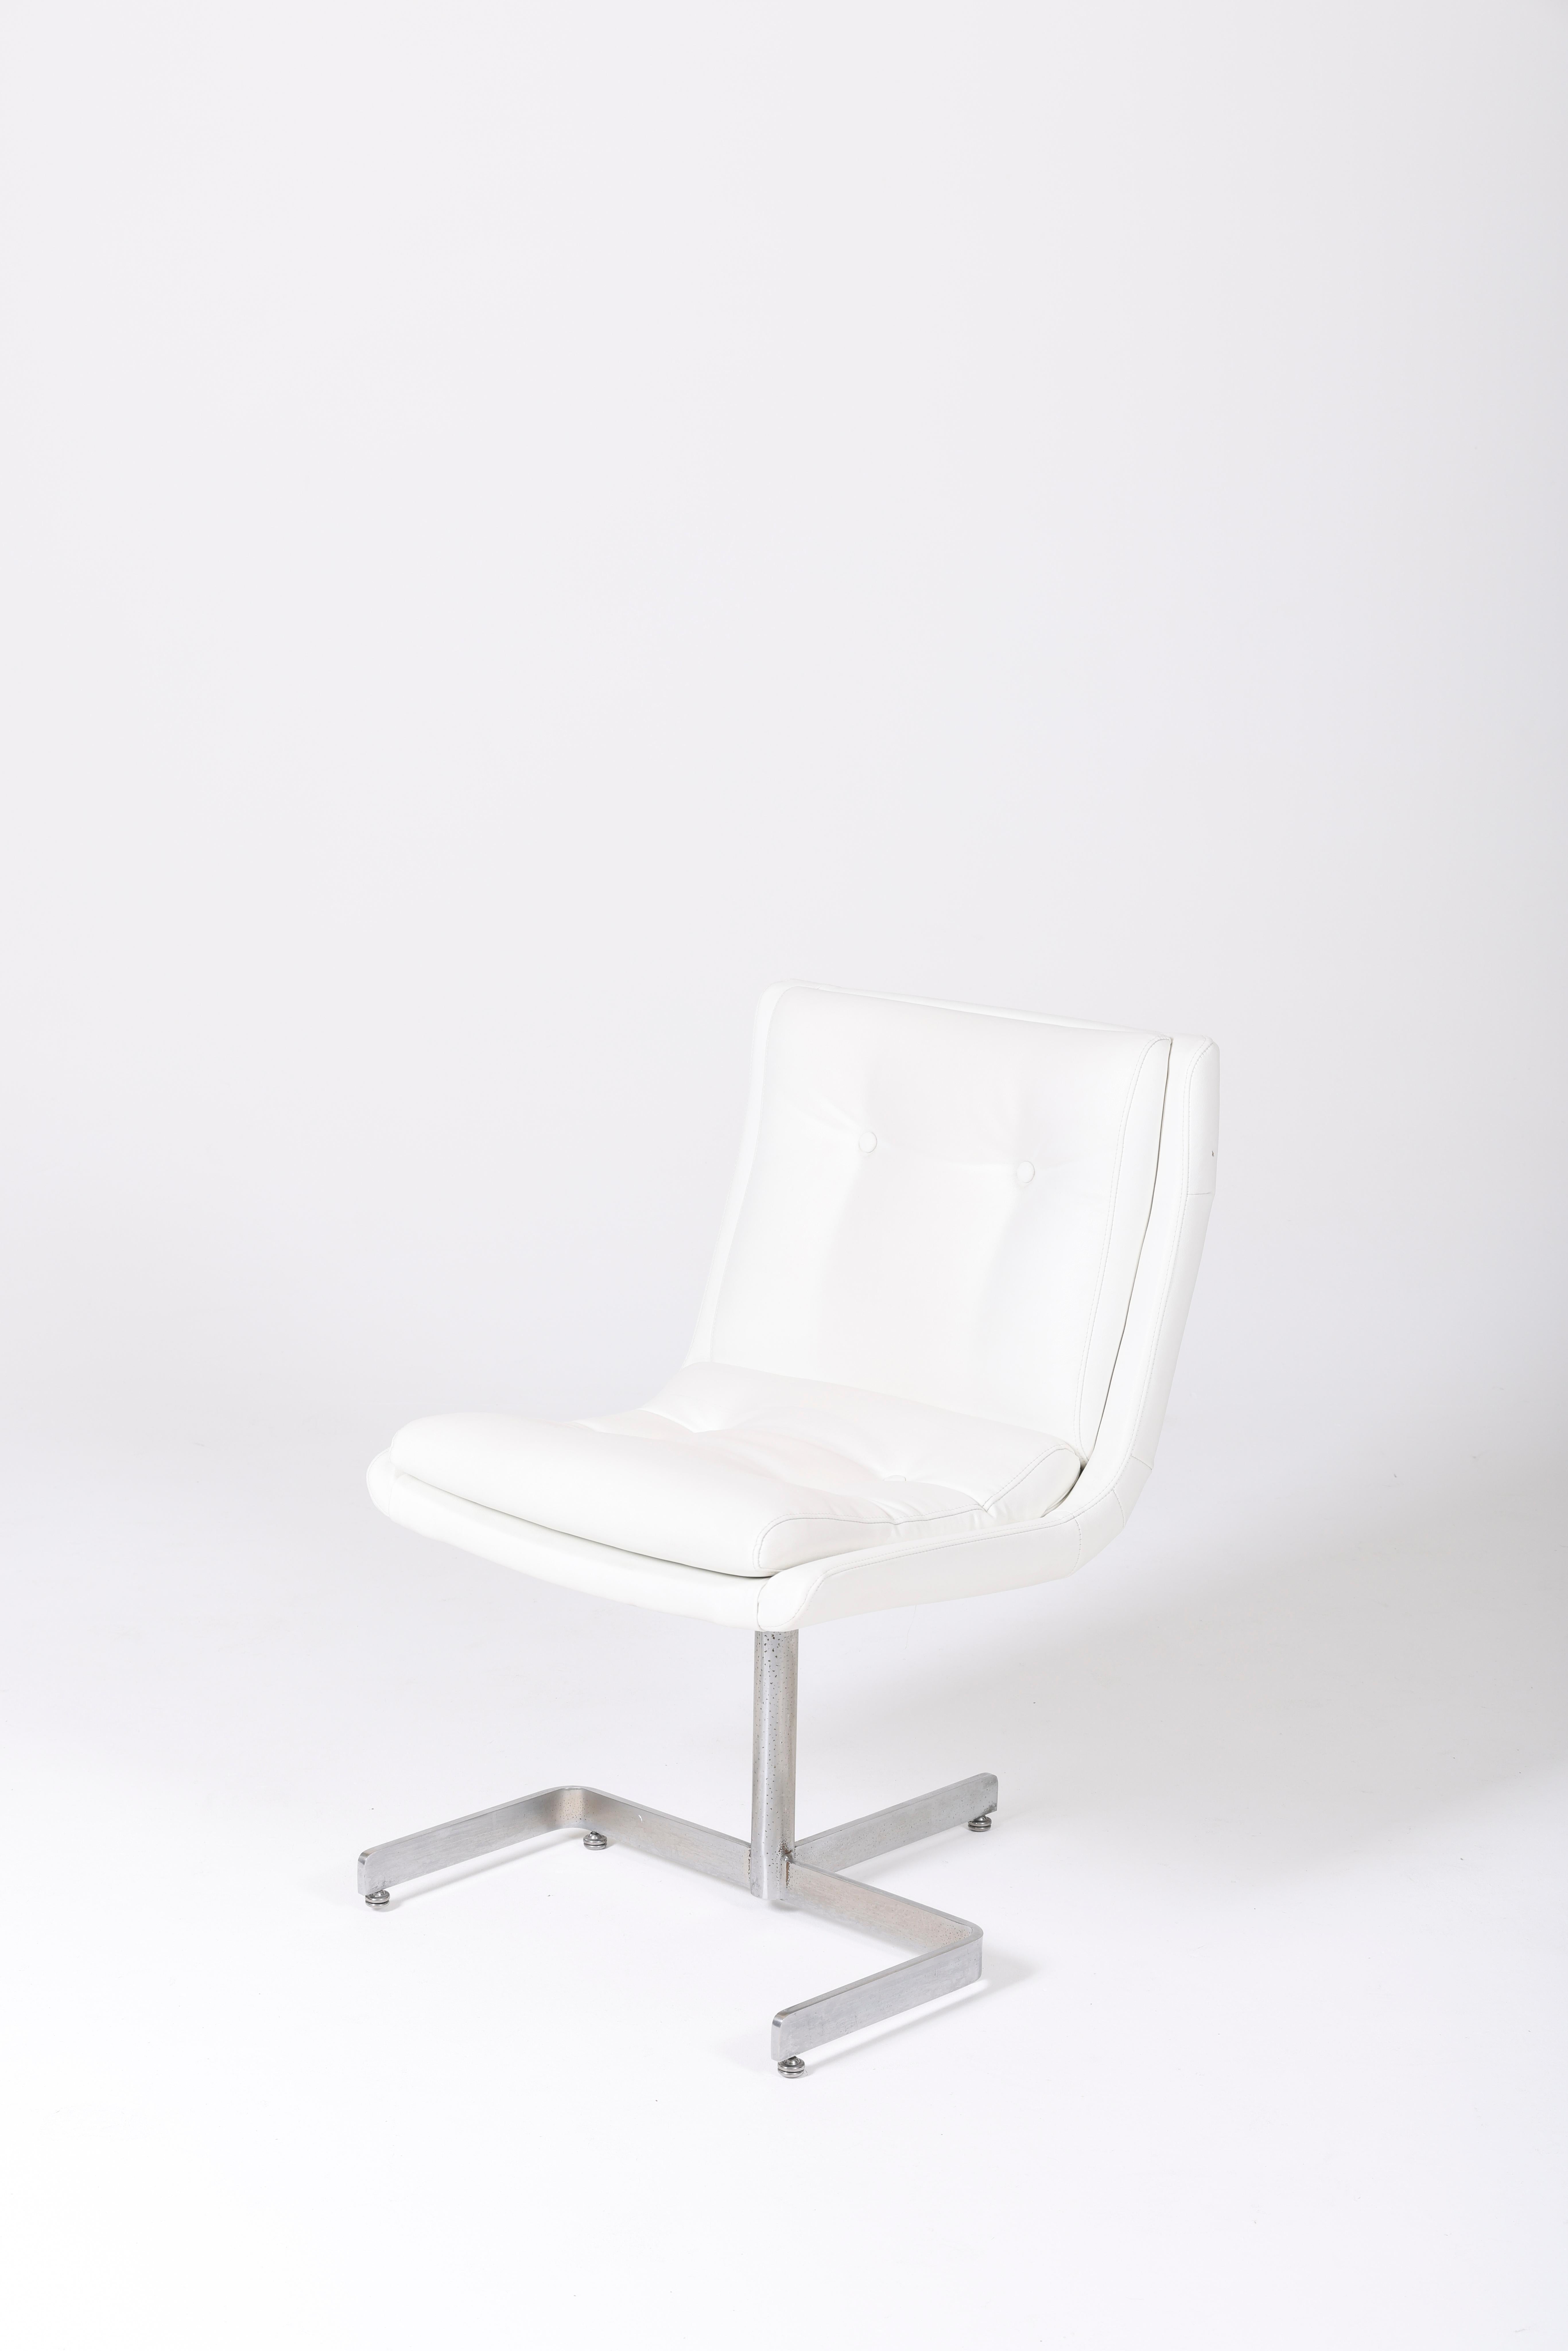 Chaise du designer Raphael Raffel datant des années 1970. L'assise et le dossier sont en cuir blanc, et le piètement est en métal. En très bon état.
LP976